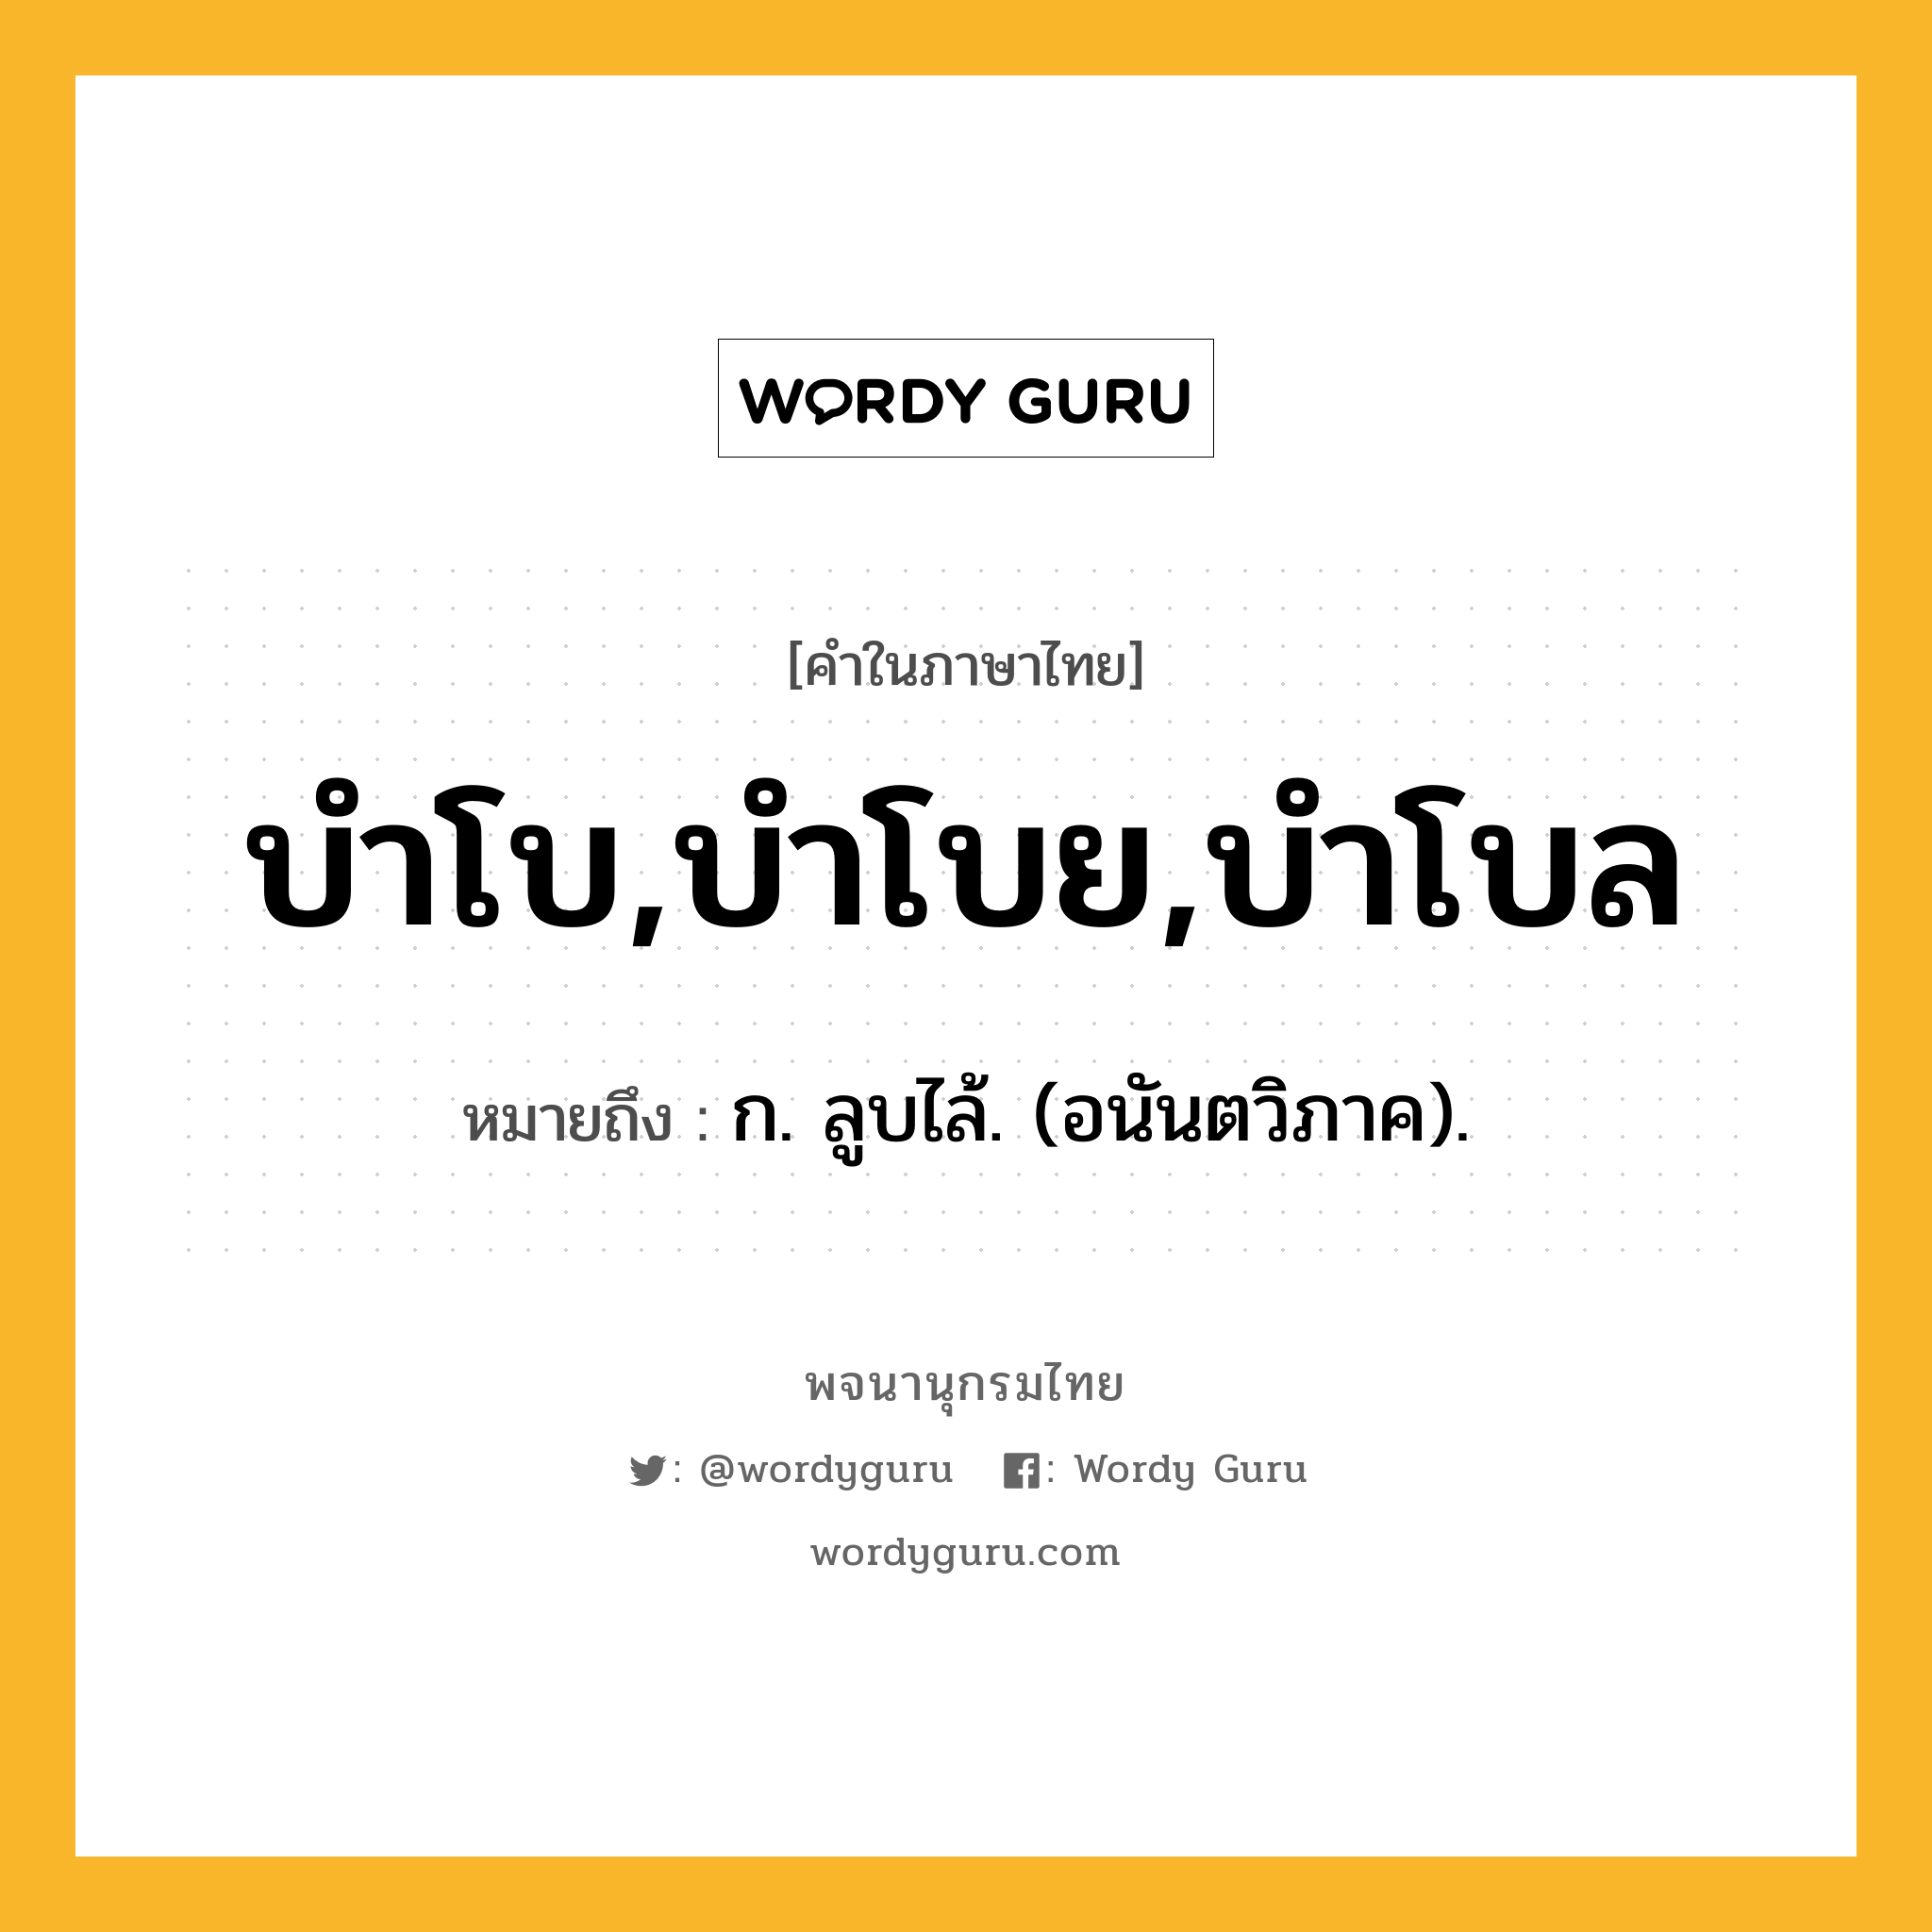 บำโบ,บำโบย,บำโบล ความหมาย หมายถึงอะไร?, คำในภาษาไทย บำโบ,บำโบย,บำโบล หมายถึง ก. ลูบไล้. (อนันตวิภาค).